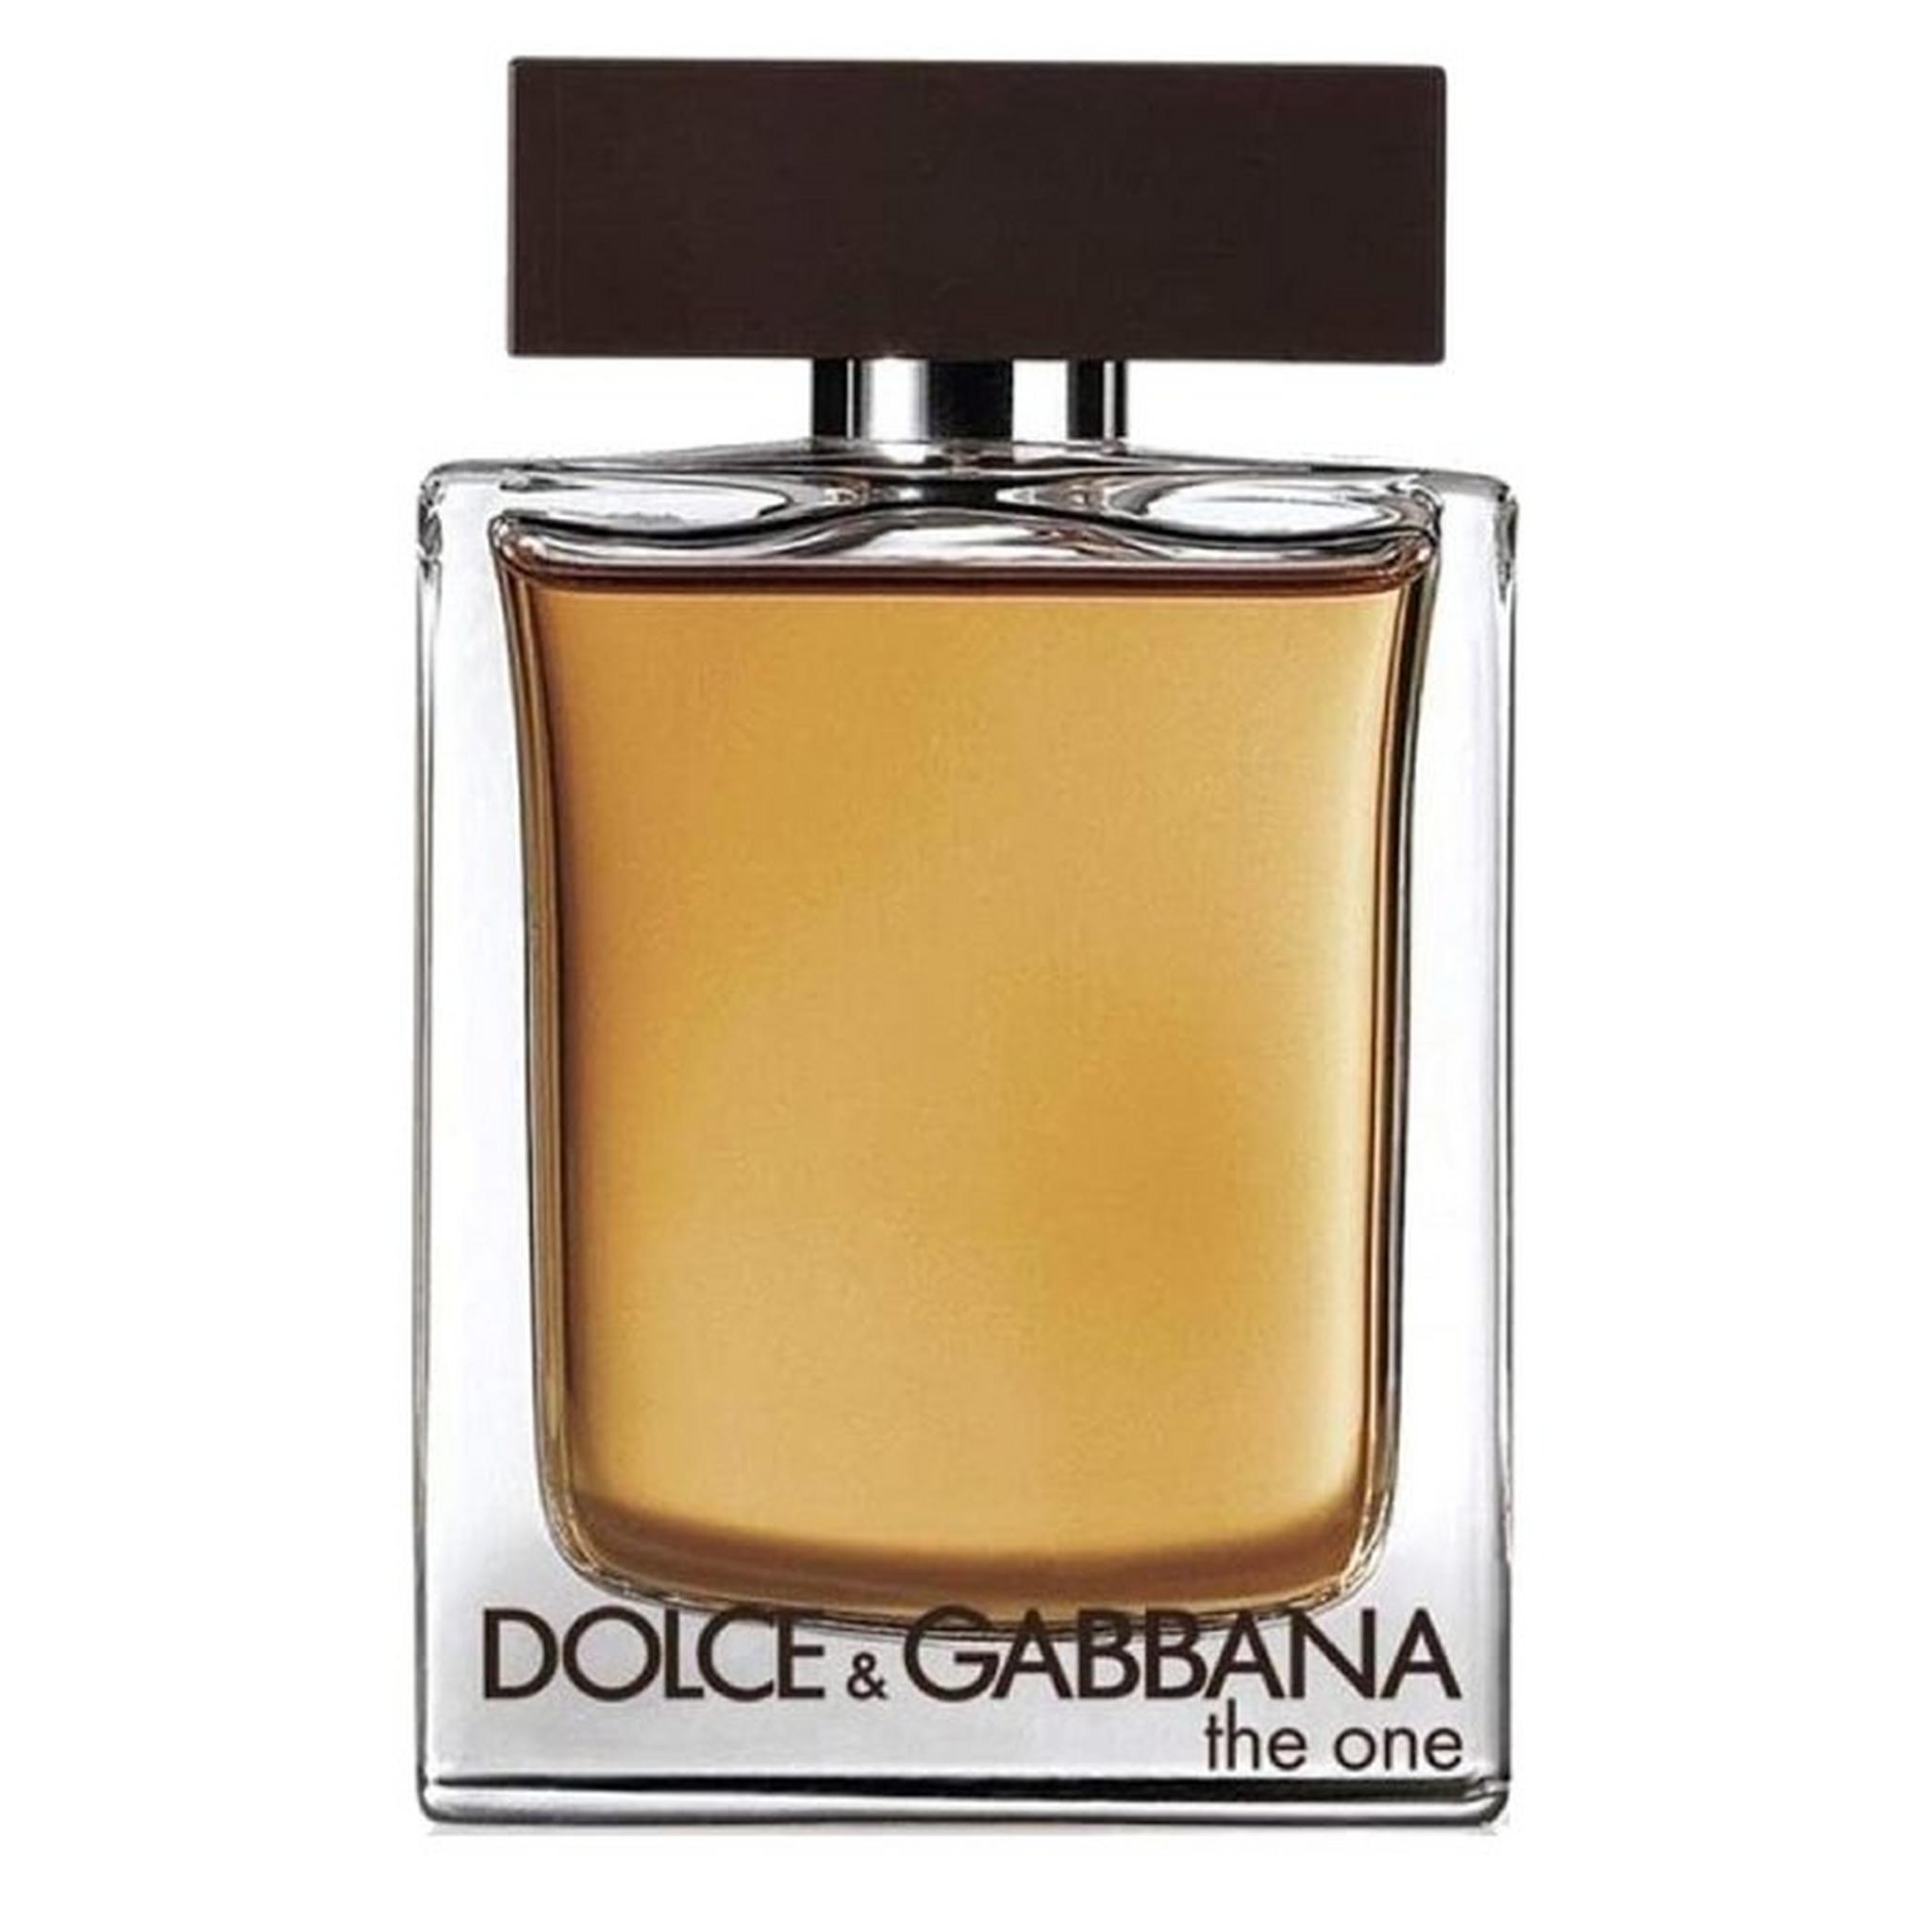 Dolce & Gabbana The One For Men 150ml Eau de Toilette